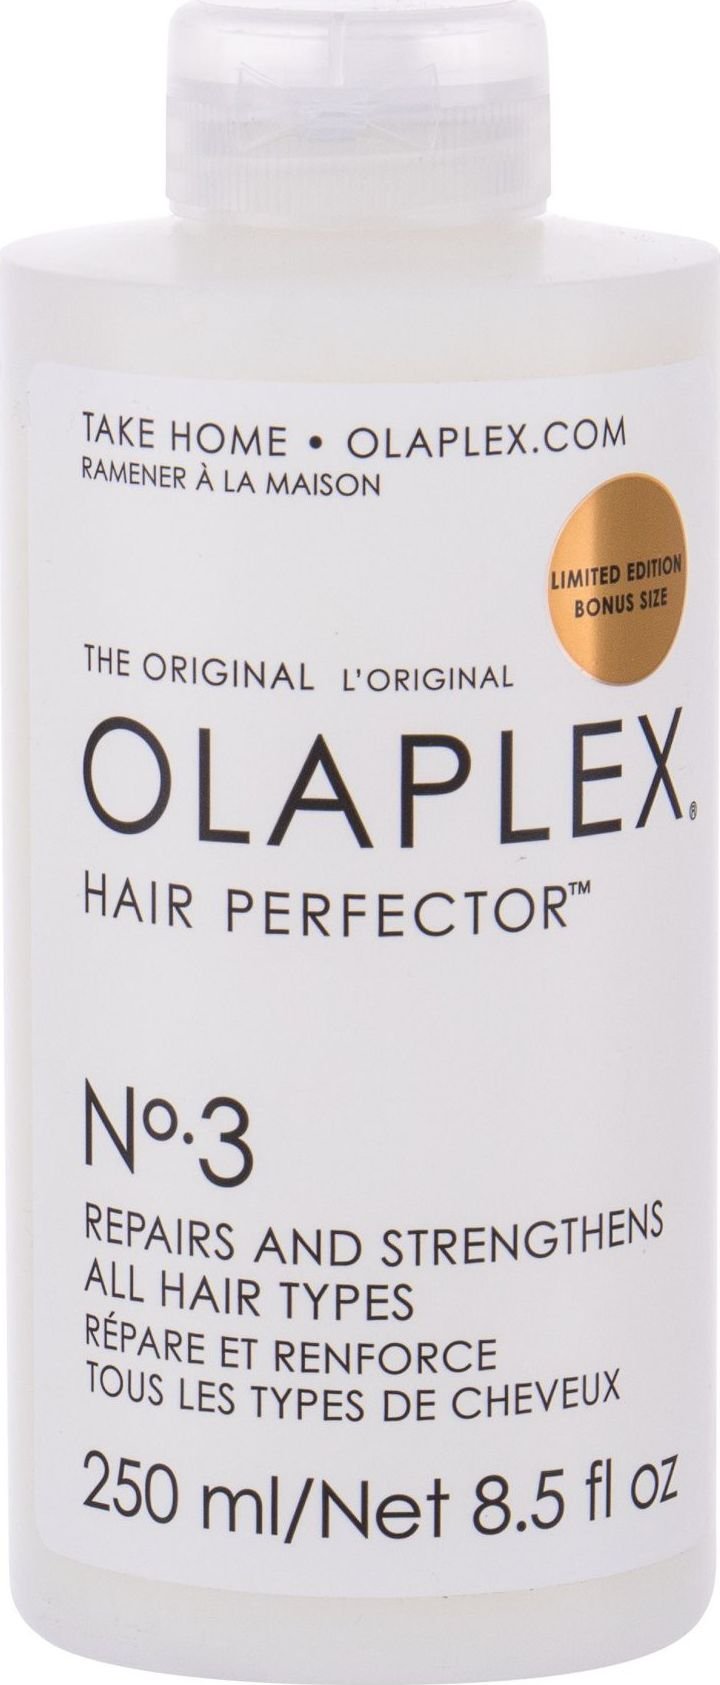 Olaplex Hair Perfector No. 3 Hair Serum 250ml